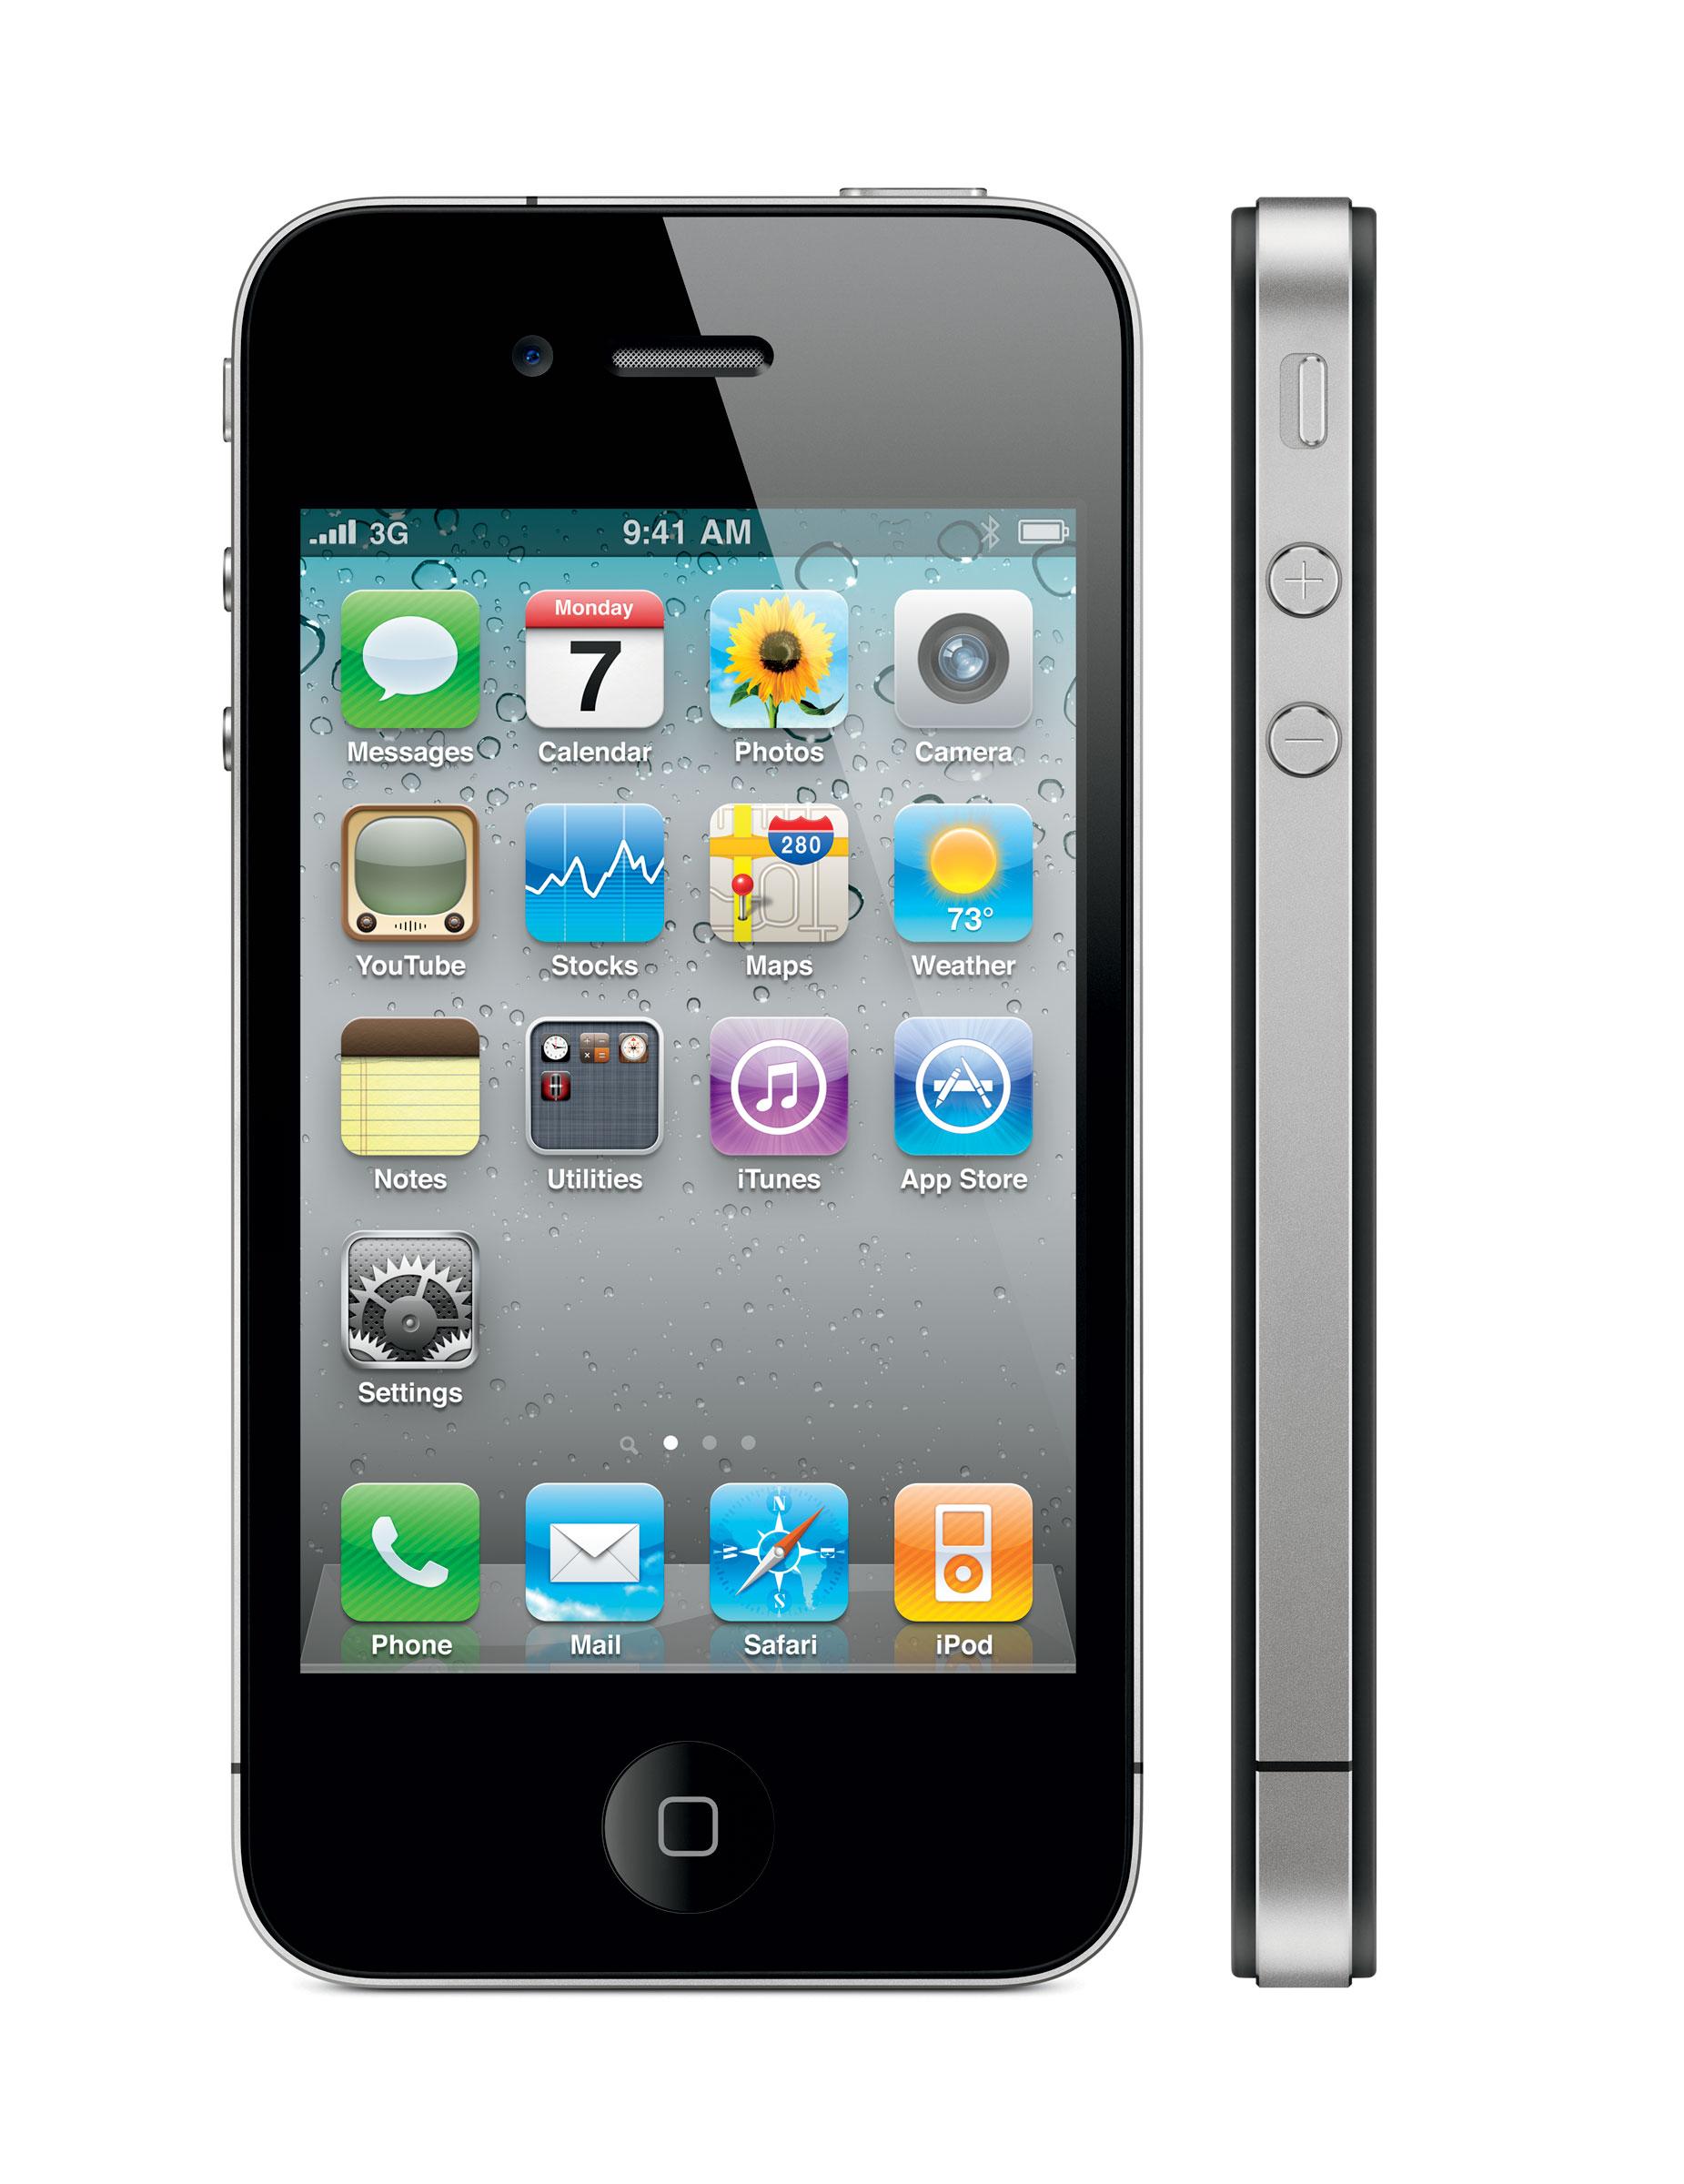 Dersom Apple lanserer en iPhone 4S vil den mest sannsynlig se ut som dagens iPhone 4 med noen små endringer.